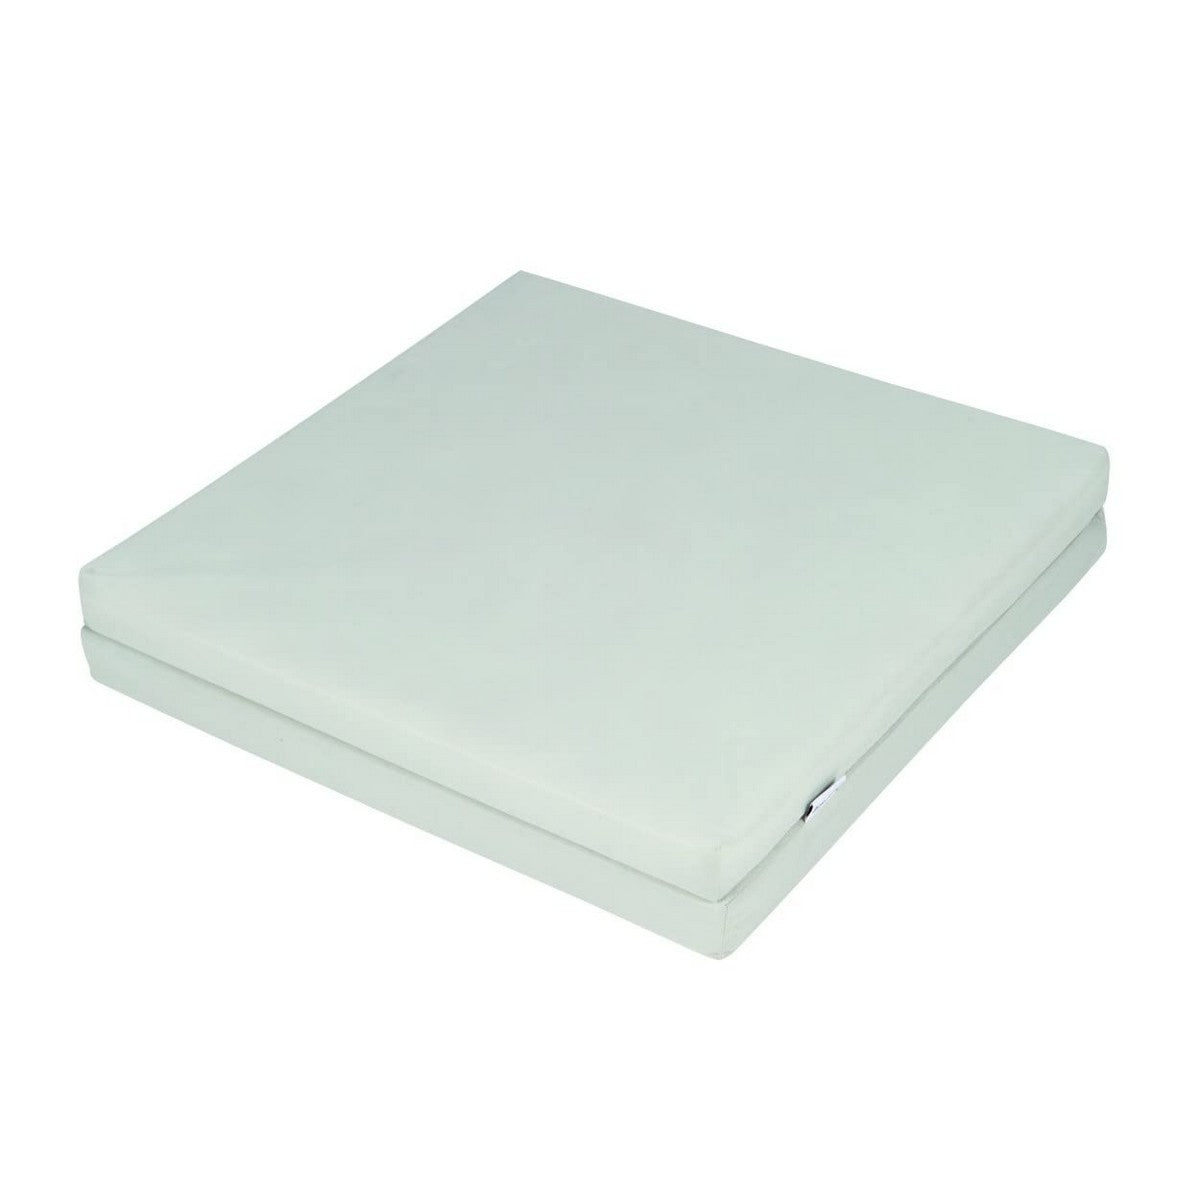 Cot mattress Tineo Foldable